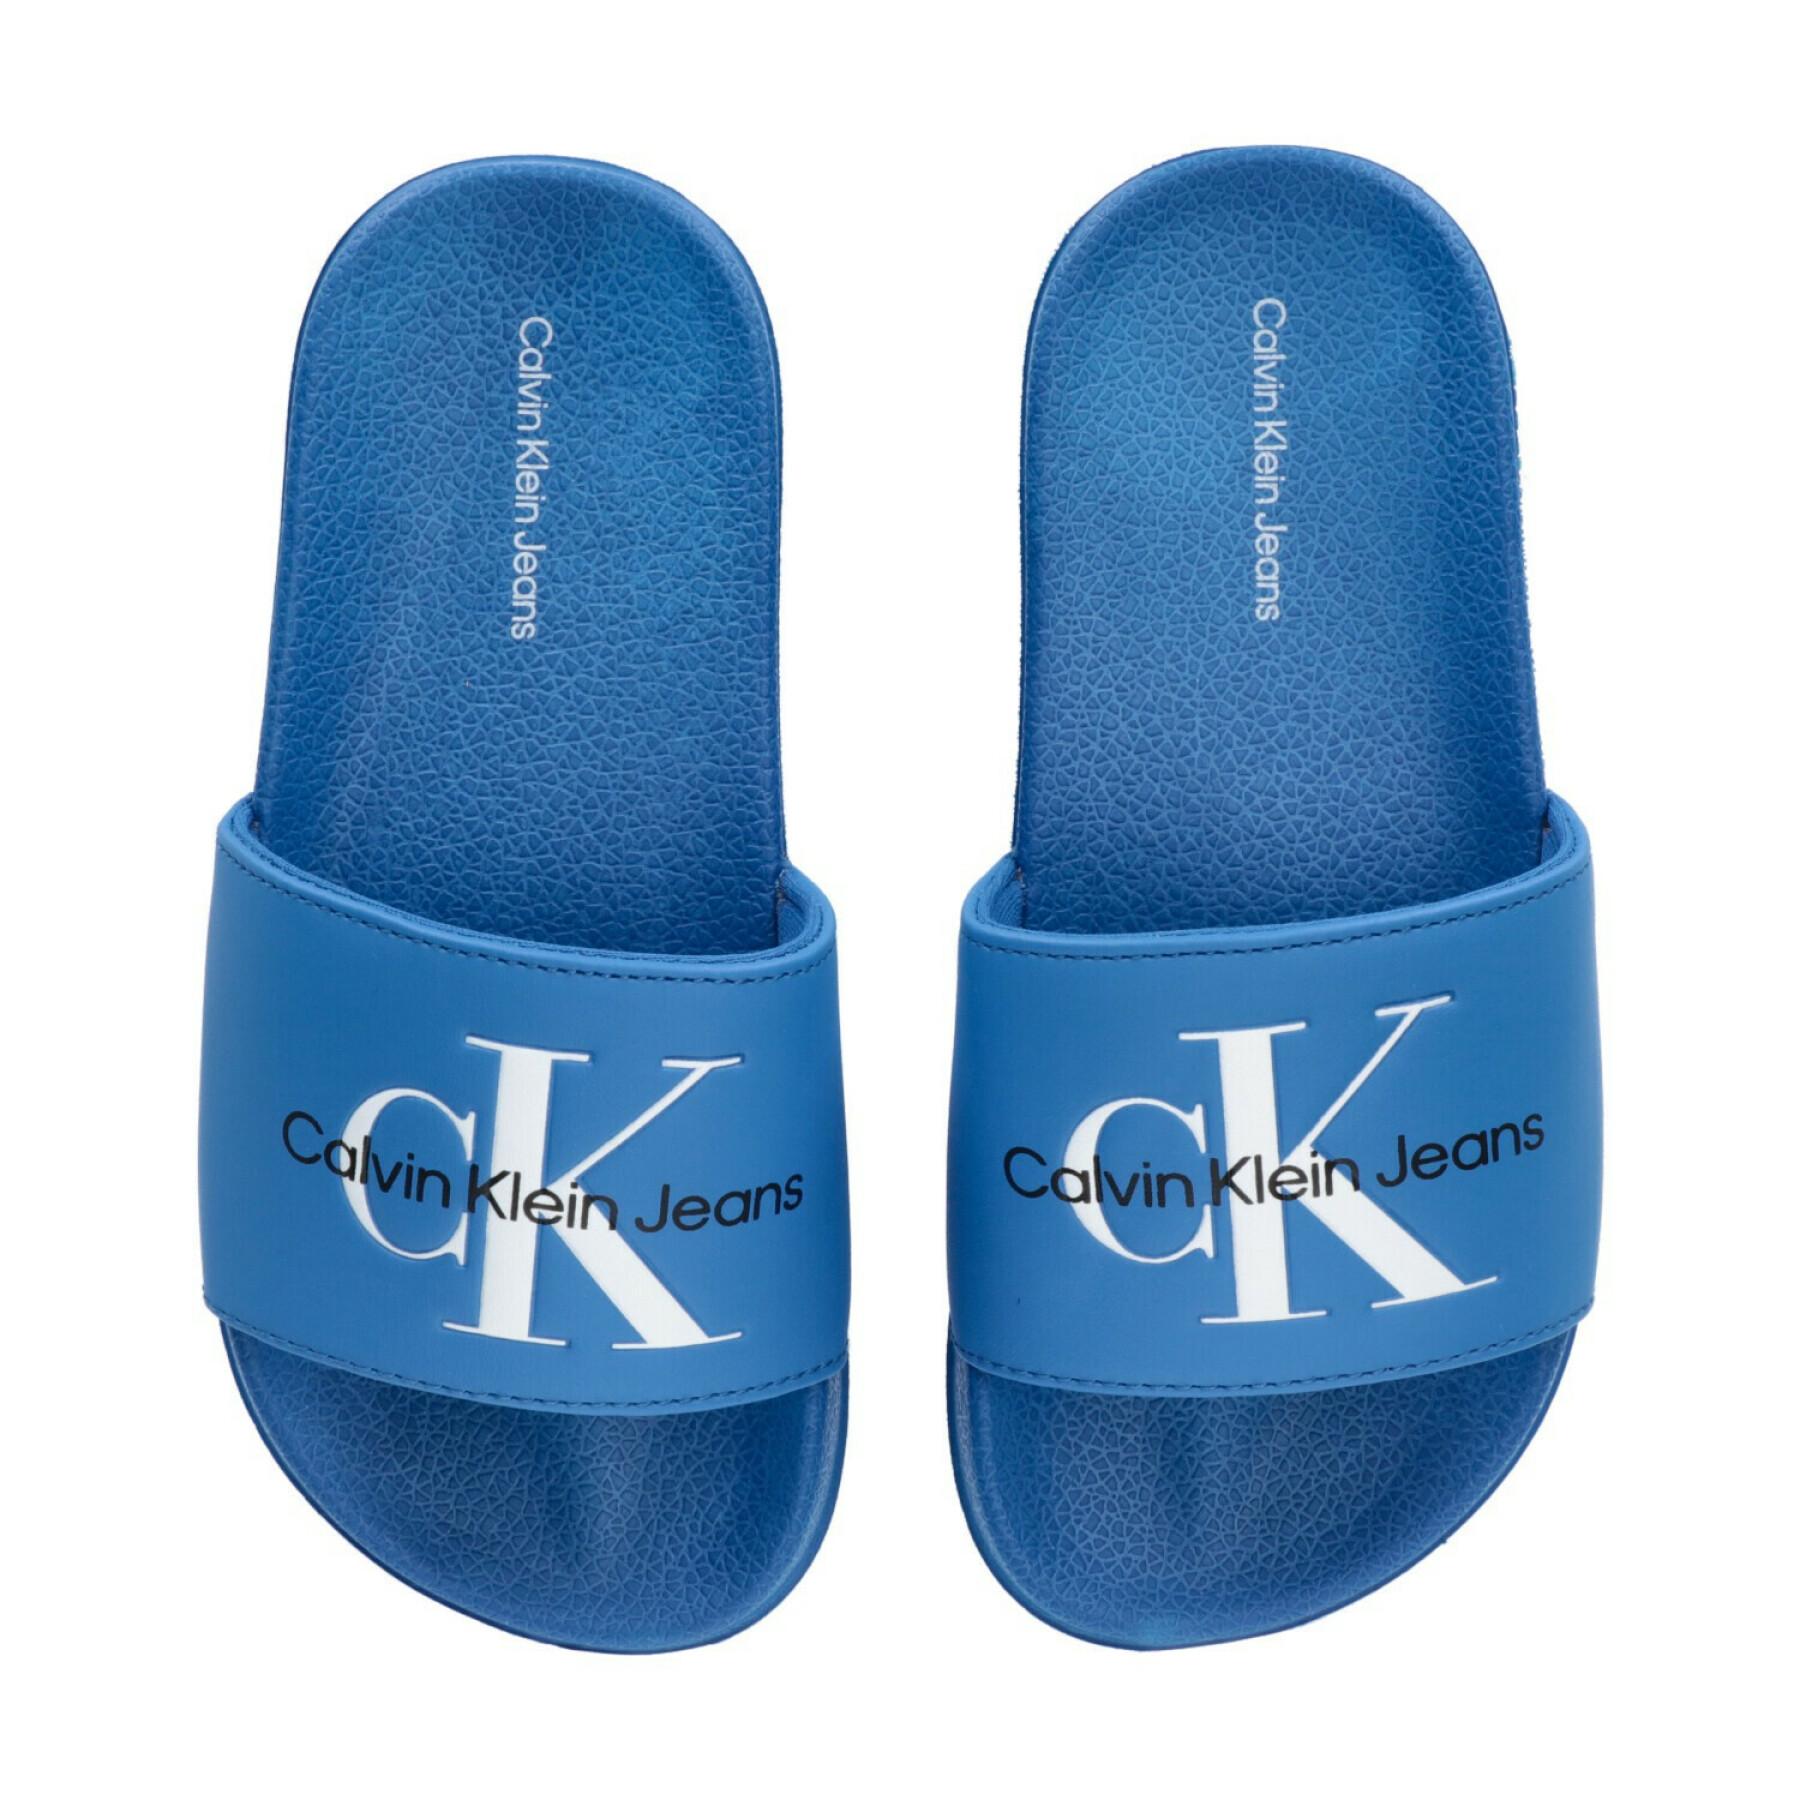 Children's swimming pool slippers Calvin Klein